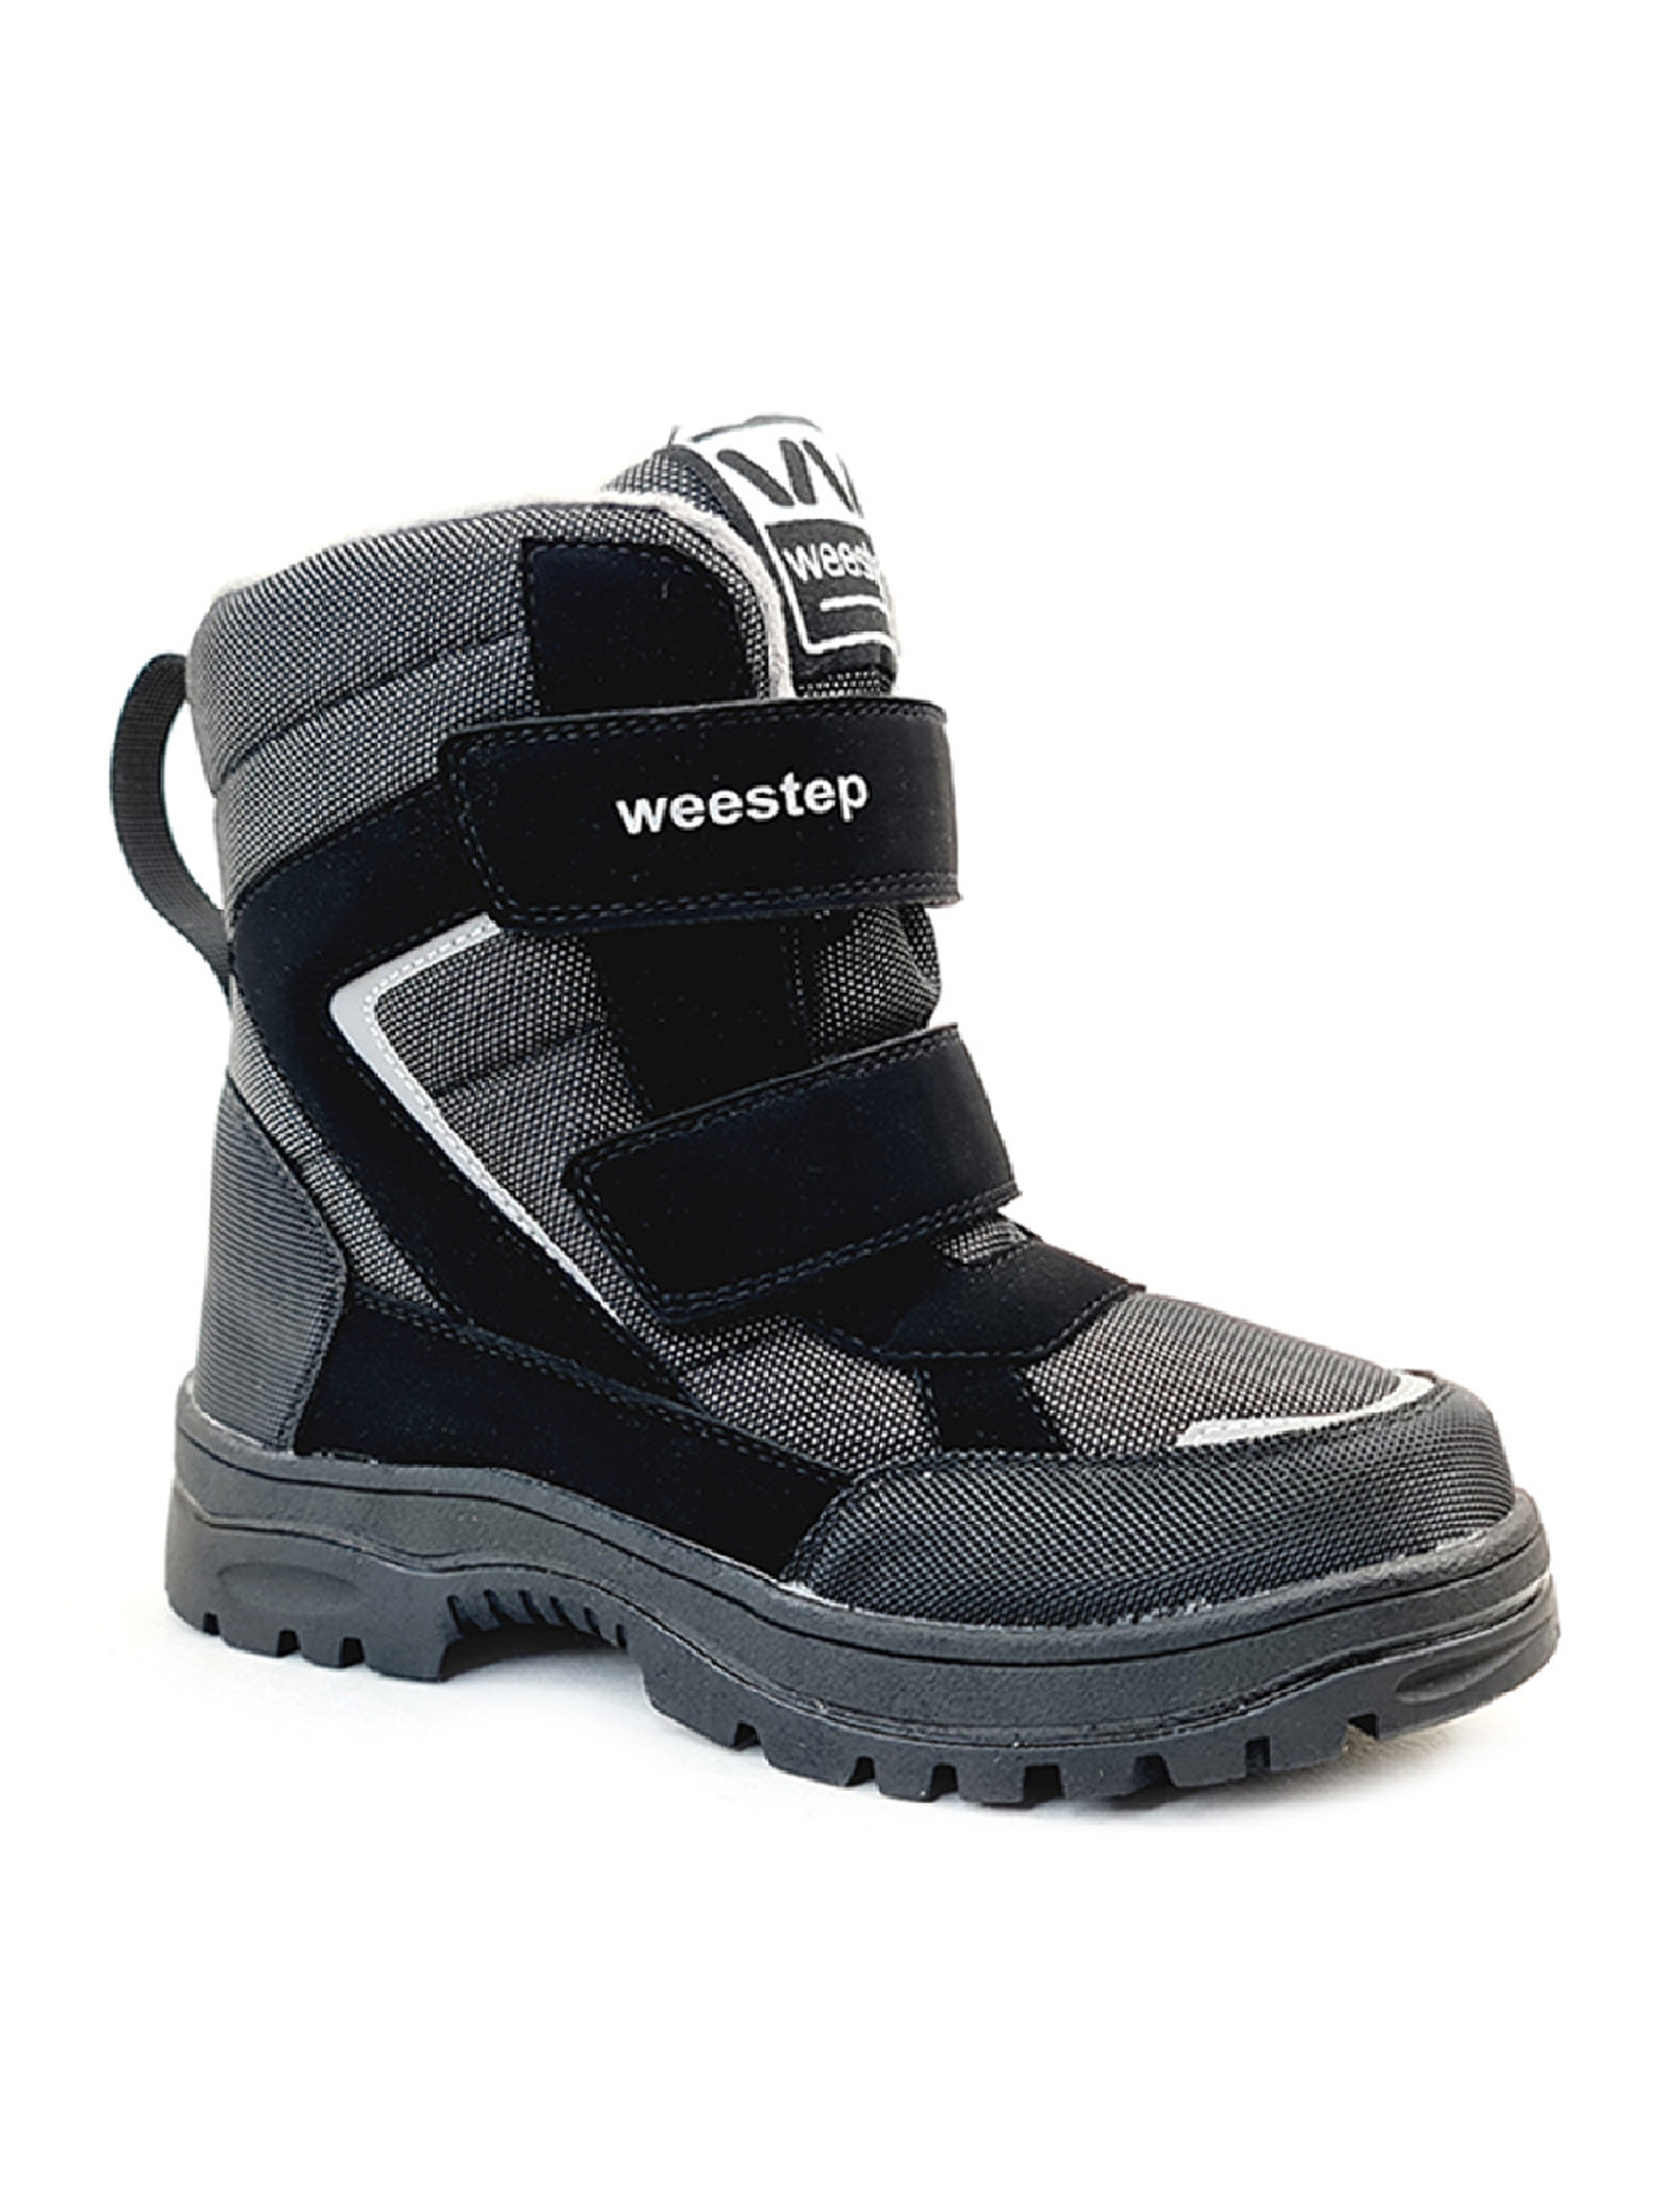 Szare śniegowce- buty zimowe chłopięce Weestep